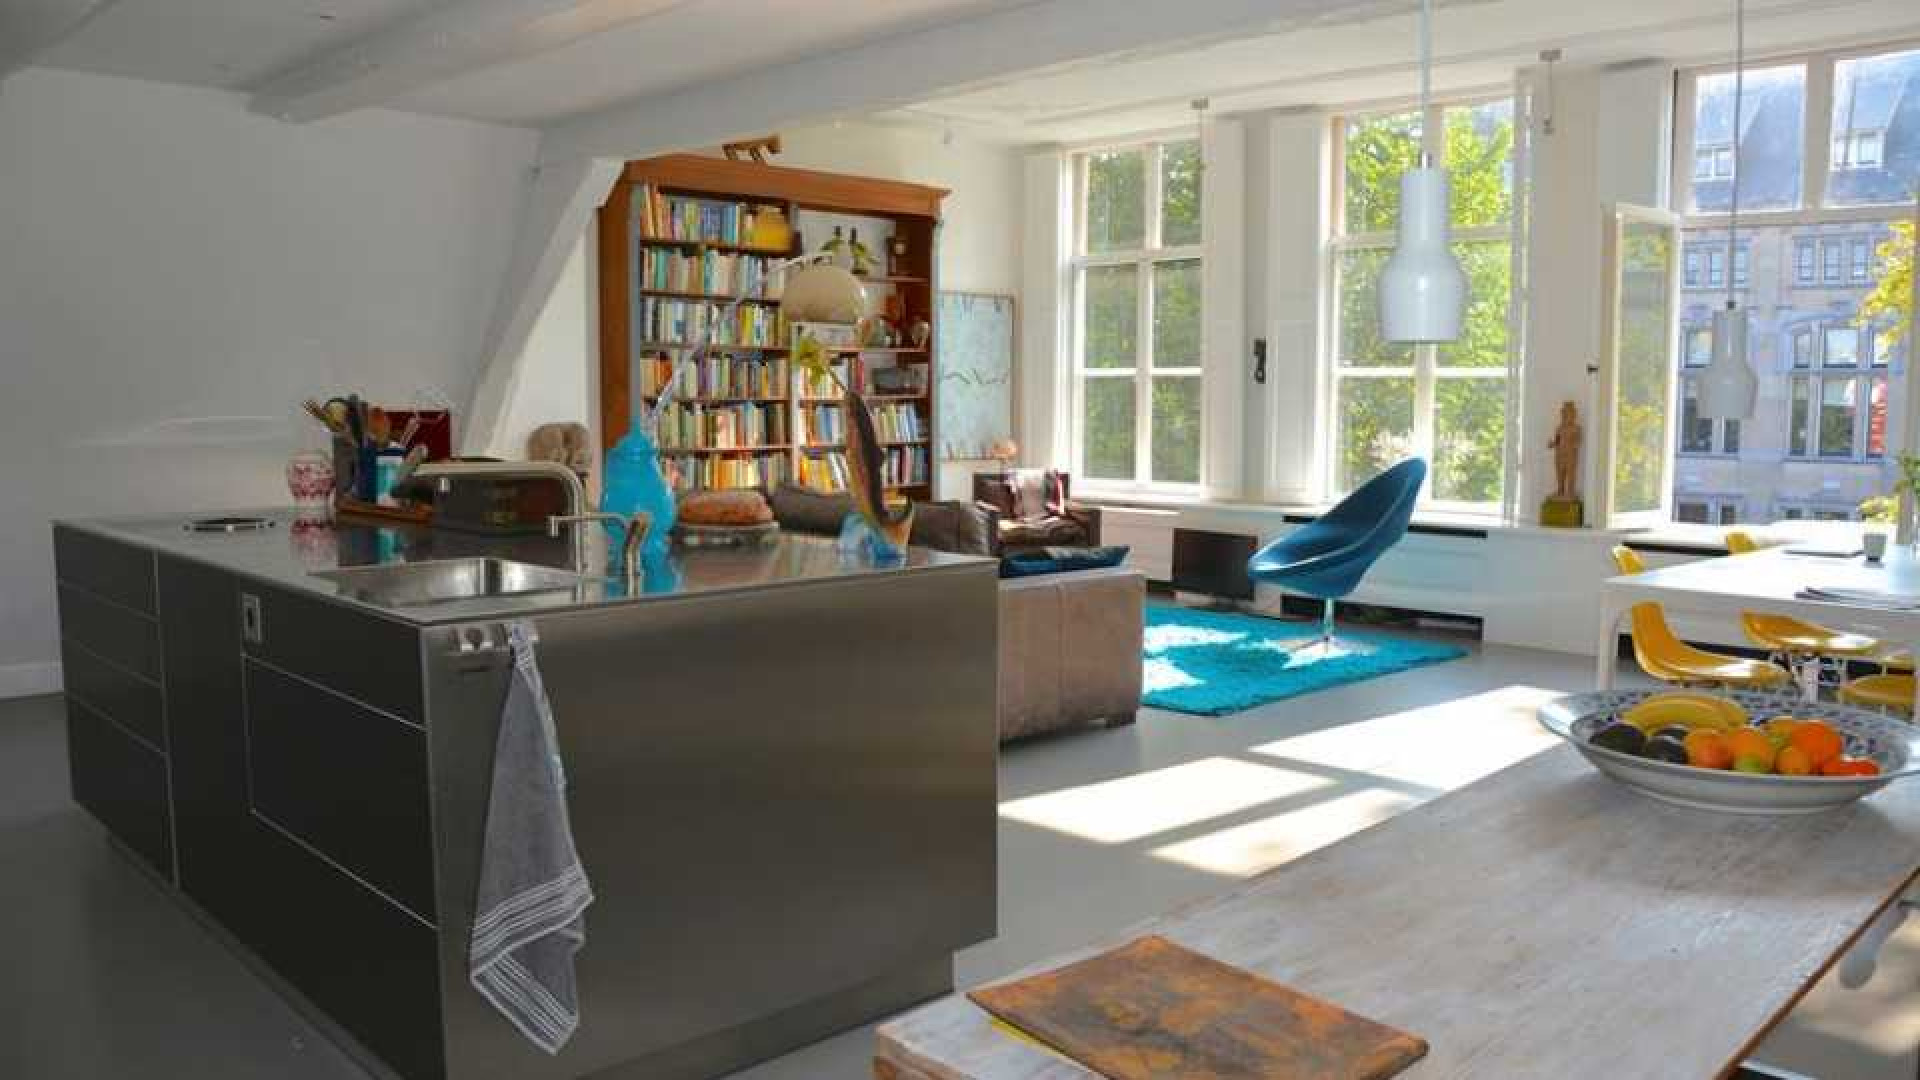 Sonja Bakker koopt zeer luxe grachtenappartement in Amsterdam. Zie foto's